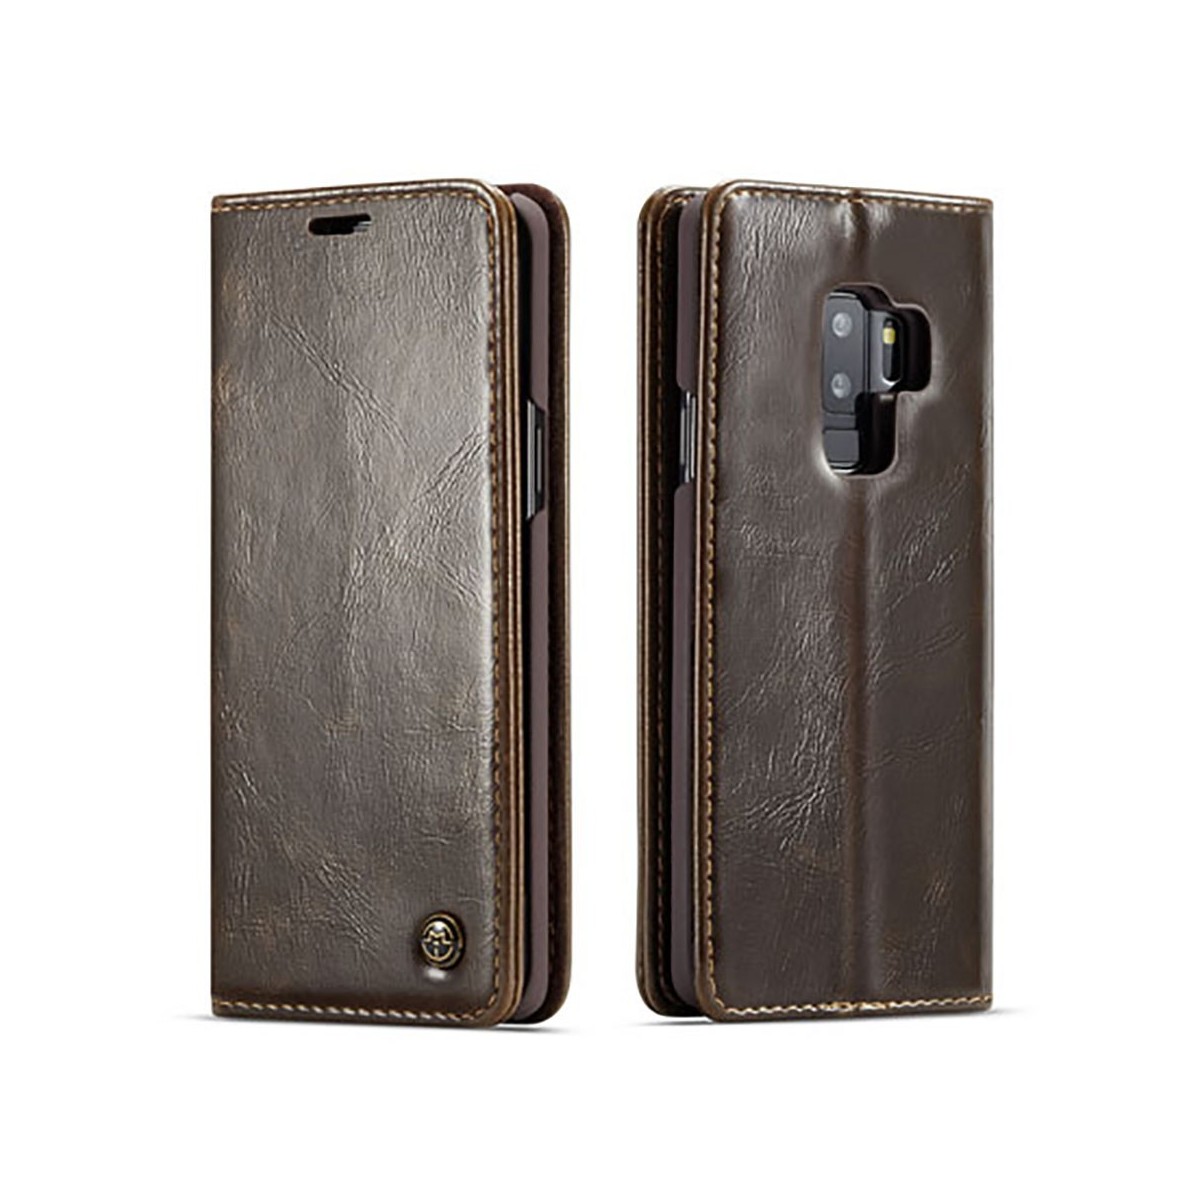 Etui Galaxy S9 Plus porte-cartes marron - CaseMe